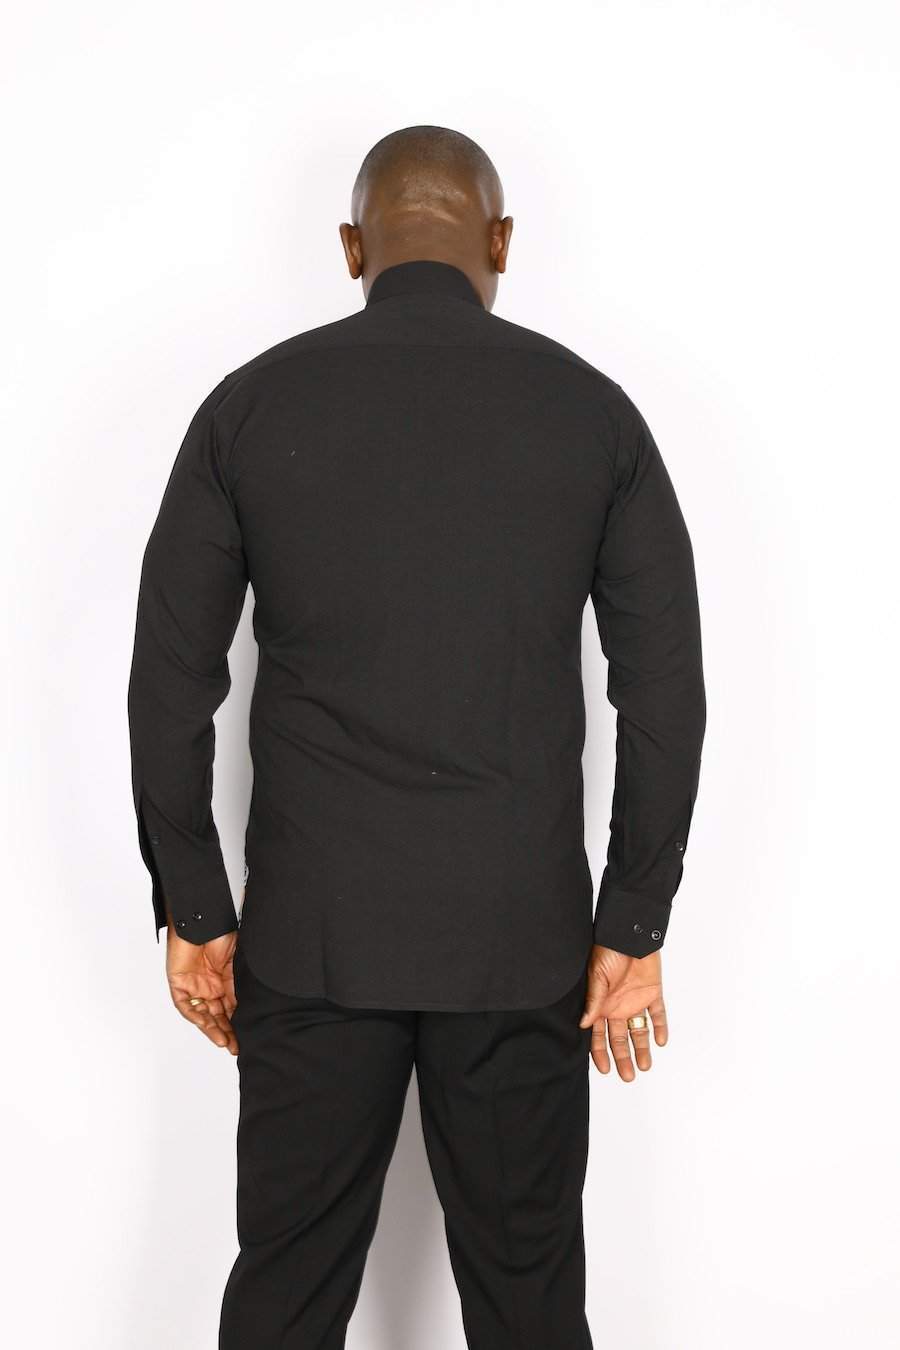 African Black Half Design-danddclothing-African Men Shirts,African Wear for Men,Black